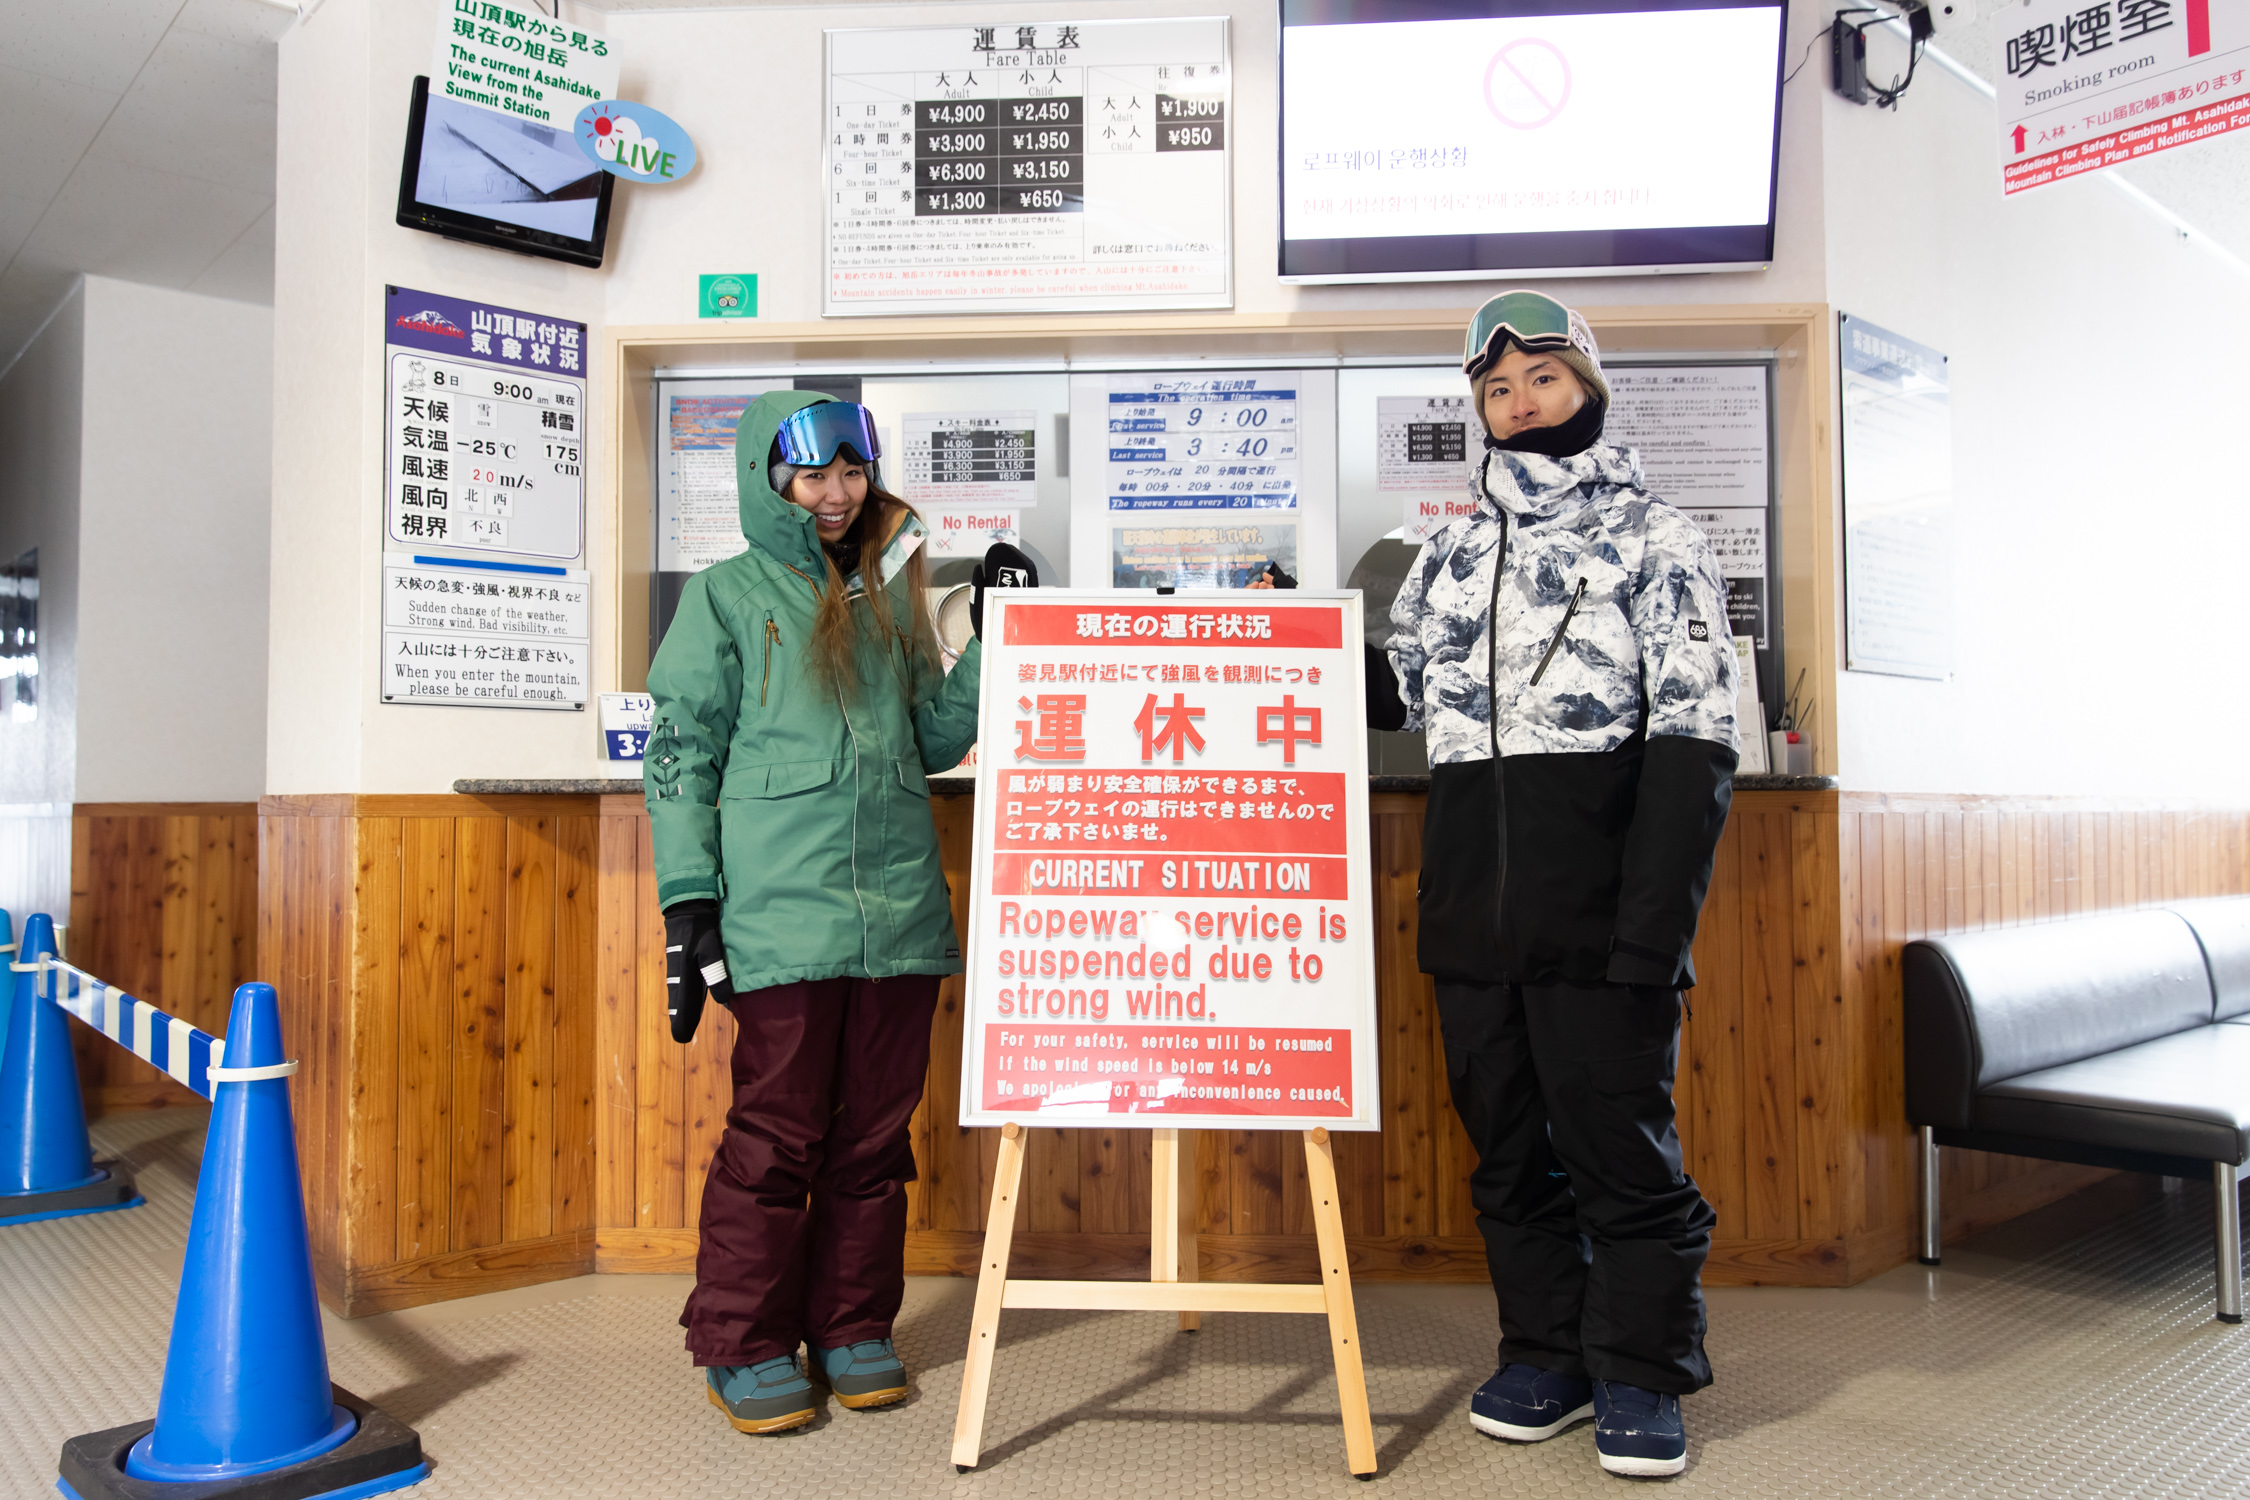 售票处暂停的招牌。左边是山顶站附近天气条件下温度-25℃，风速20m/s的指示。